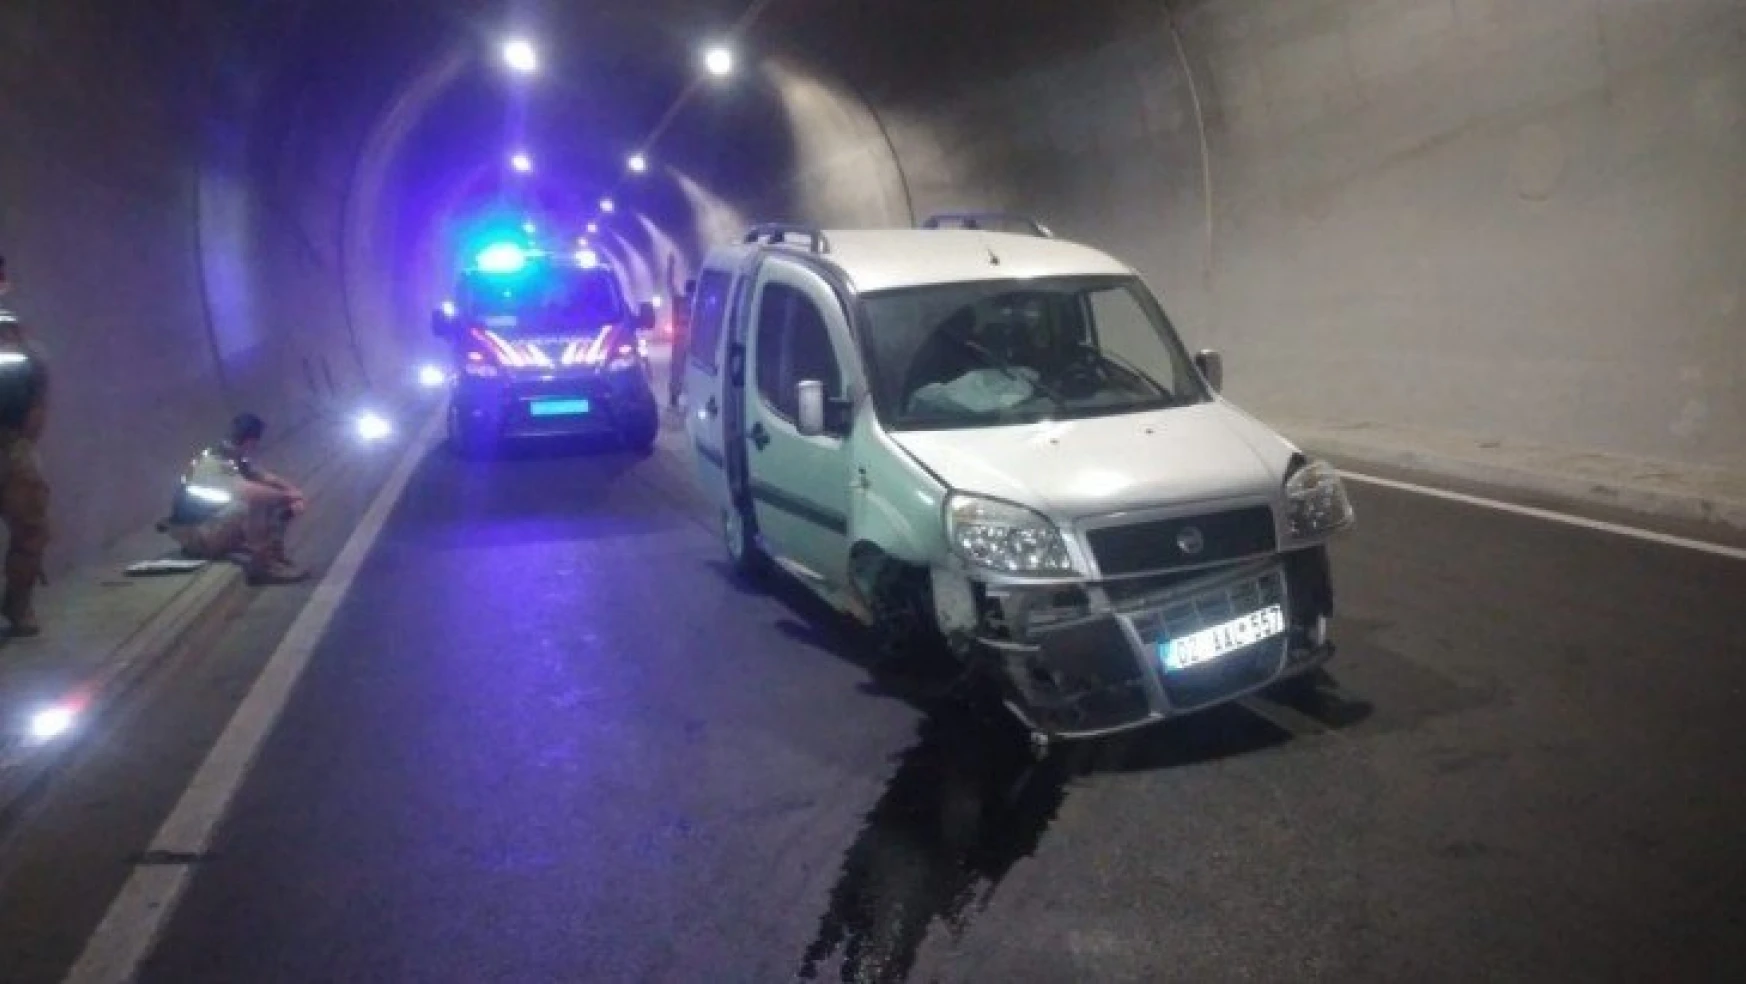 Tünel duvarına çarpan araç sürücüsü yaralandı